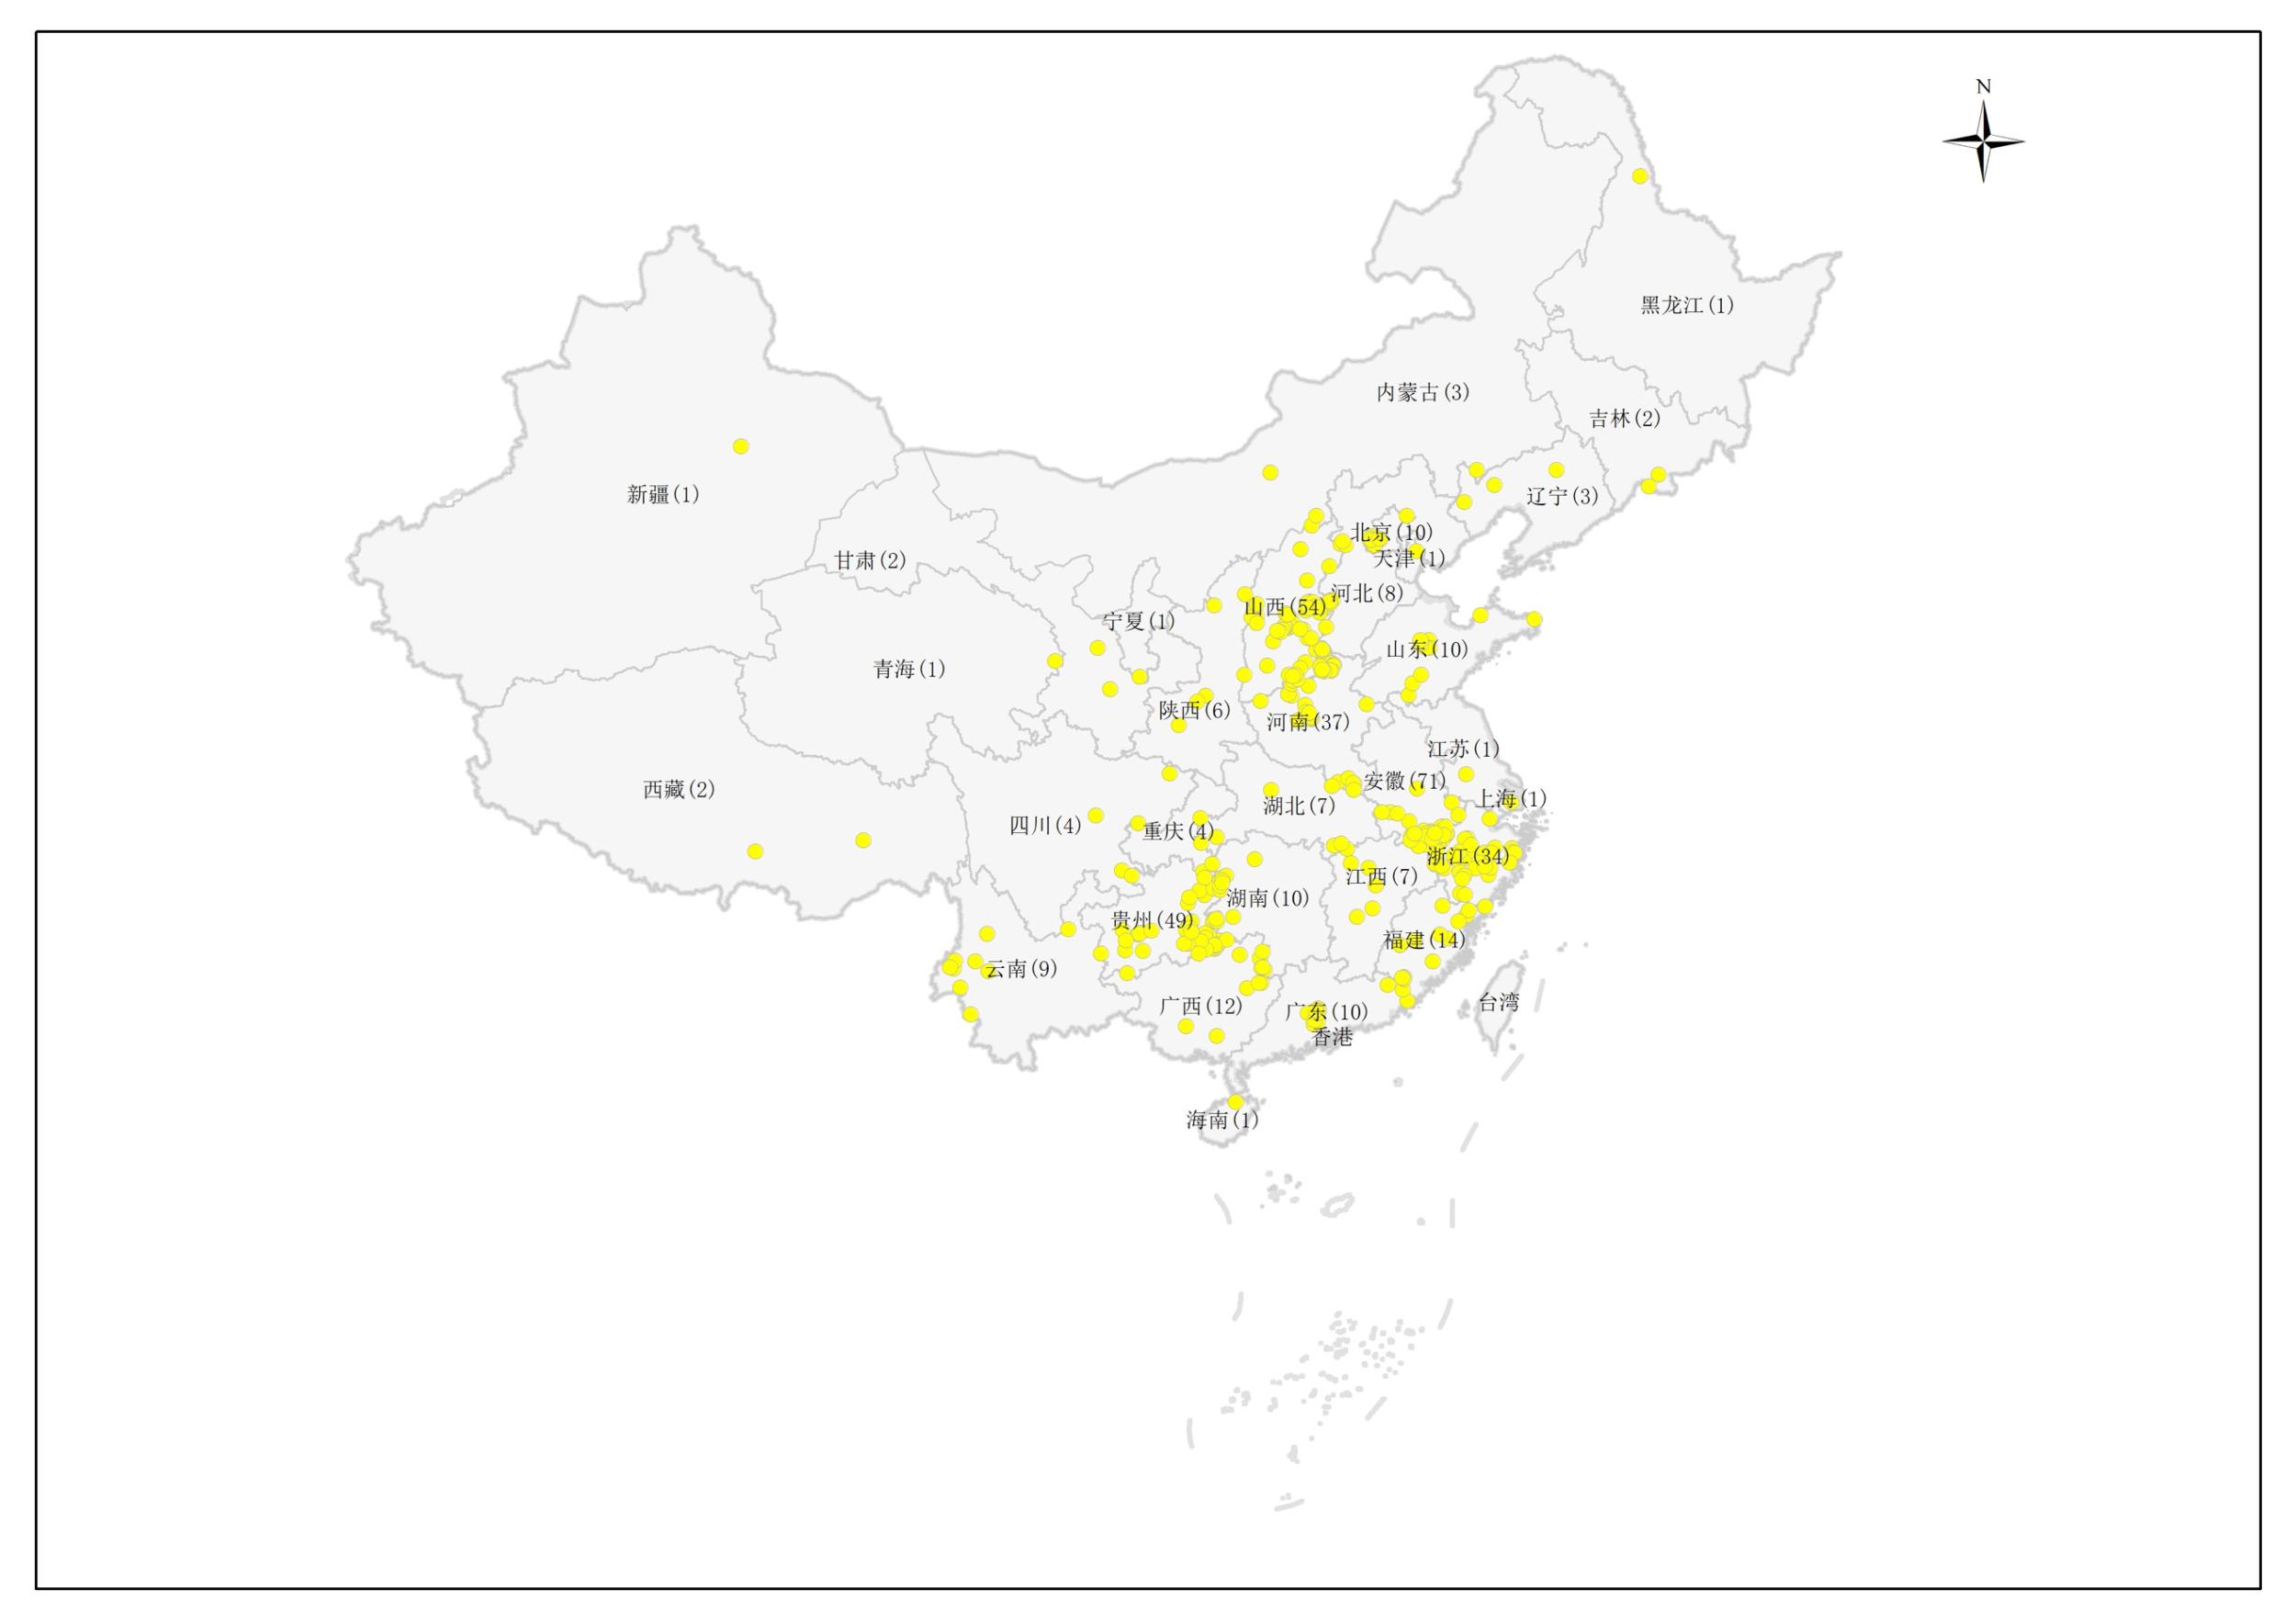 中国地图照片 简图图片